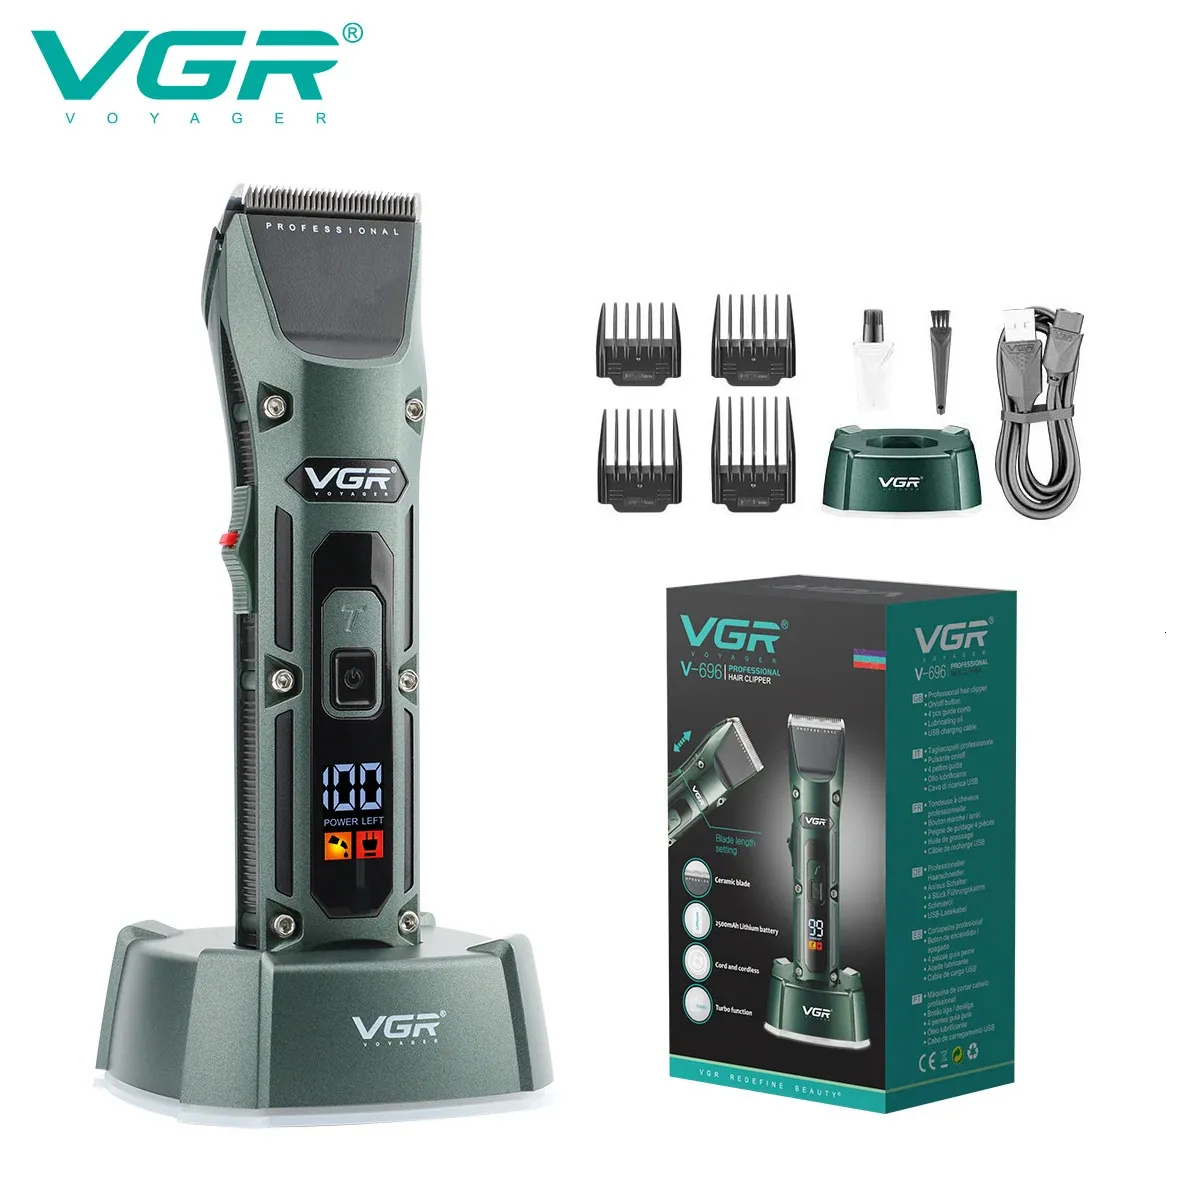 VGR Hair Clipper Professional Hair Trimmer Cordless Barber Hair Cutting Machine Digital Display Haircut Trimmer For Men V-696 240314